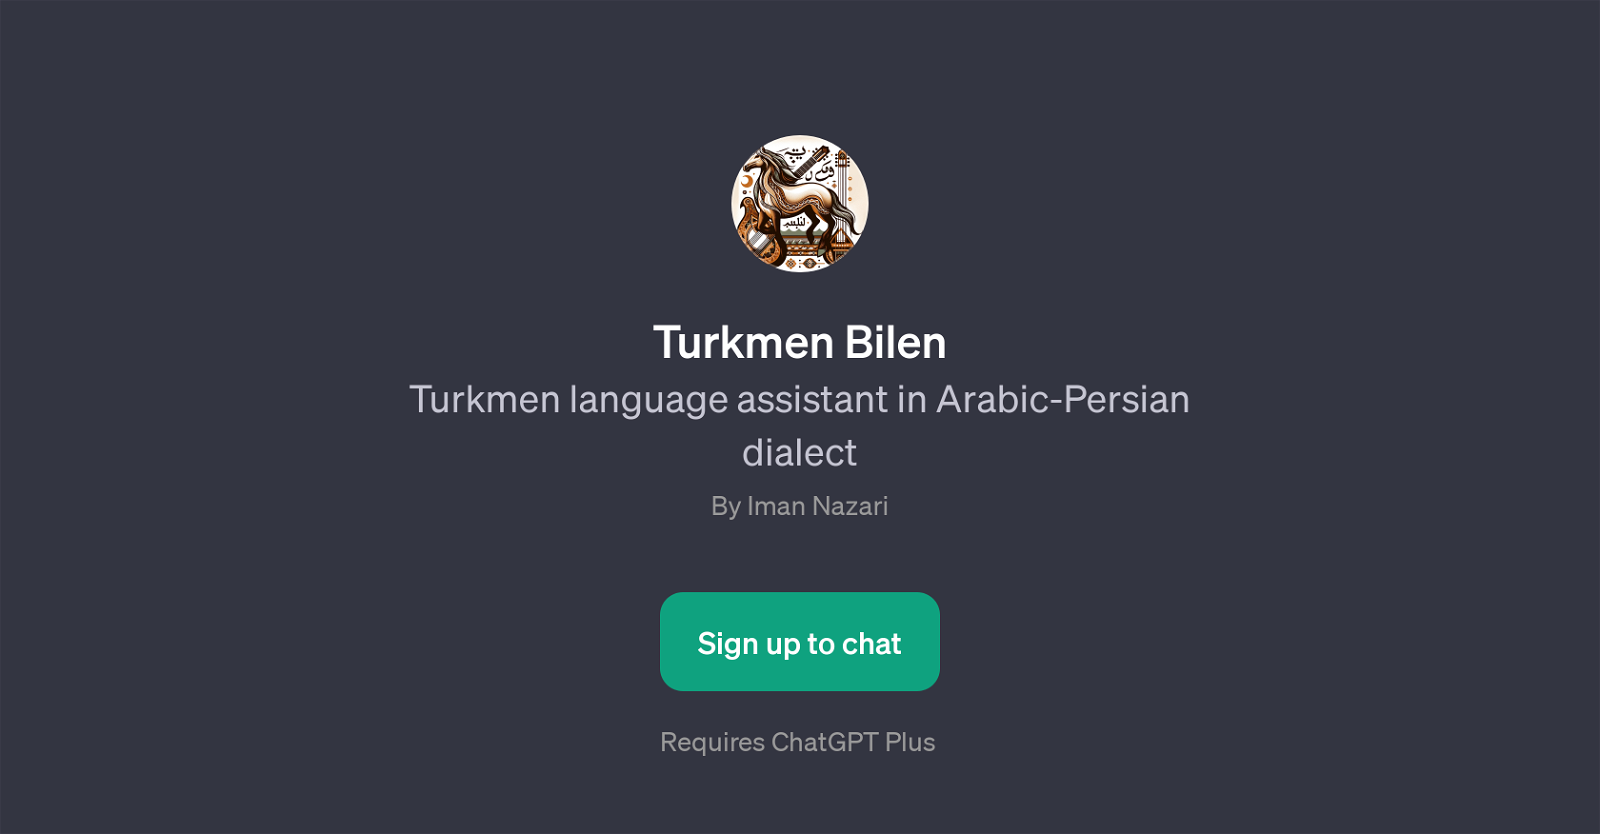 Turkmen Bilen website